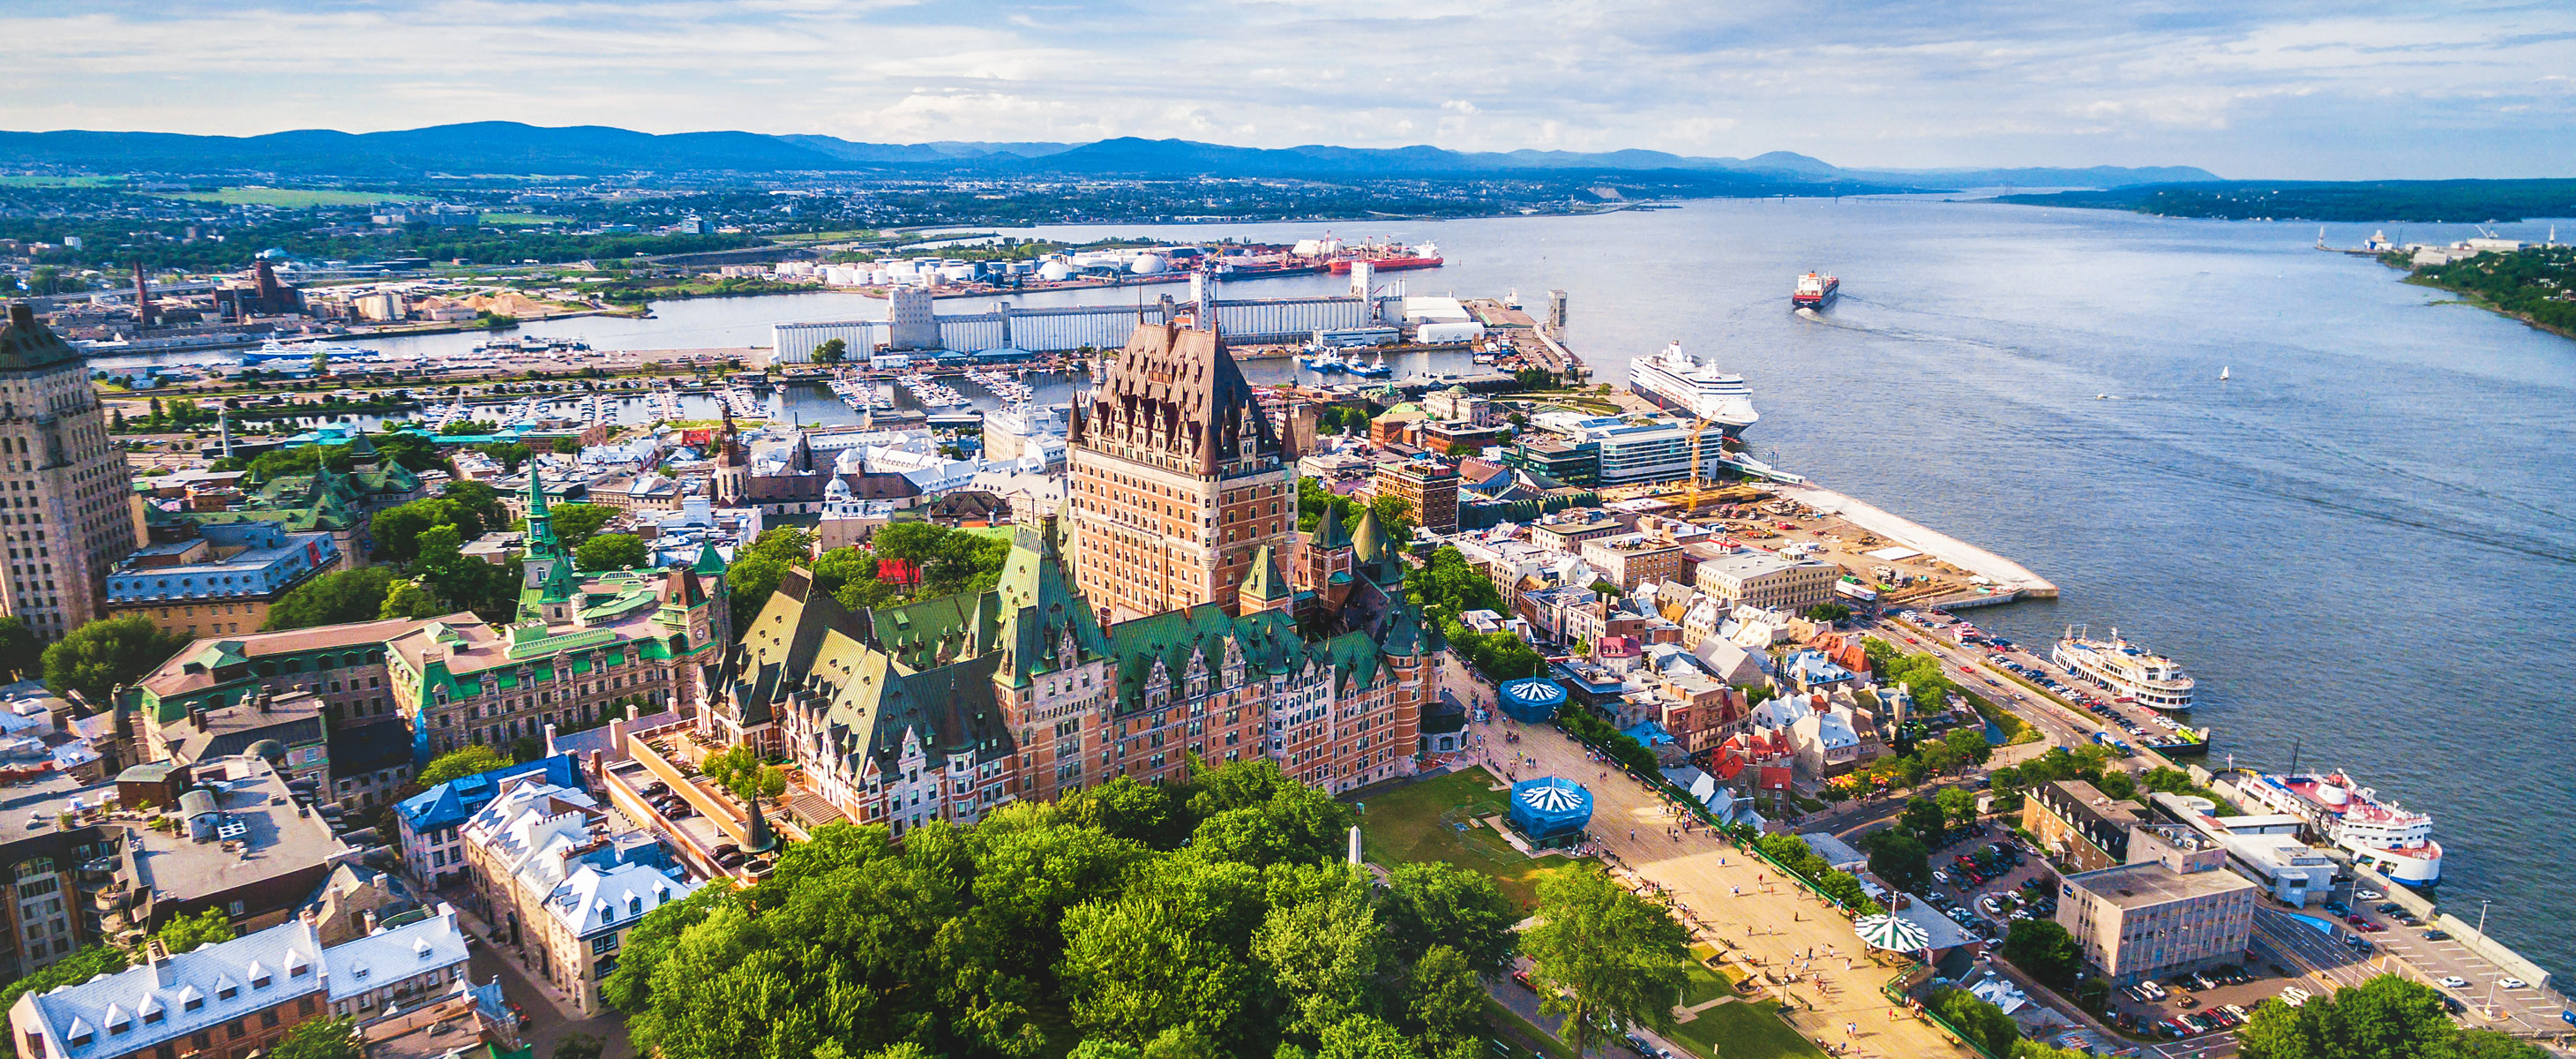 A cultural, historical tour of Québec City